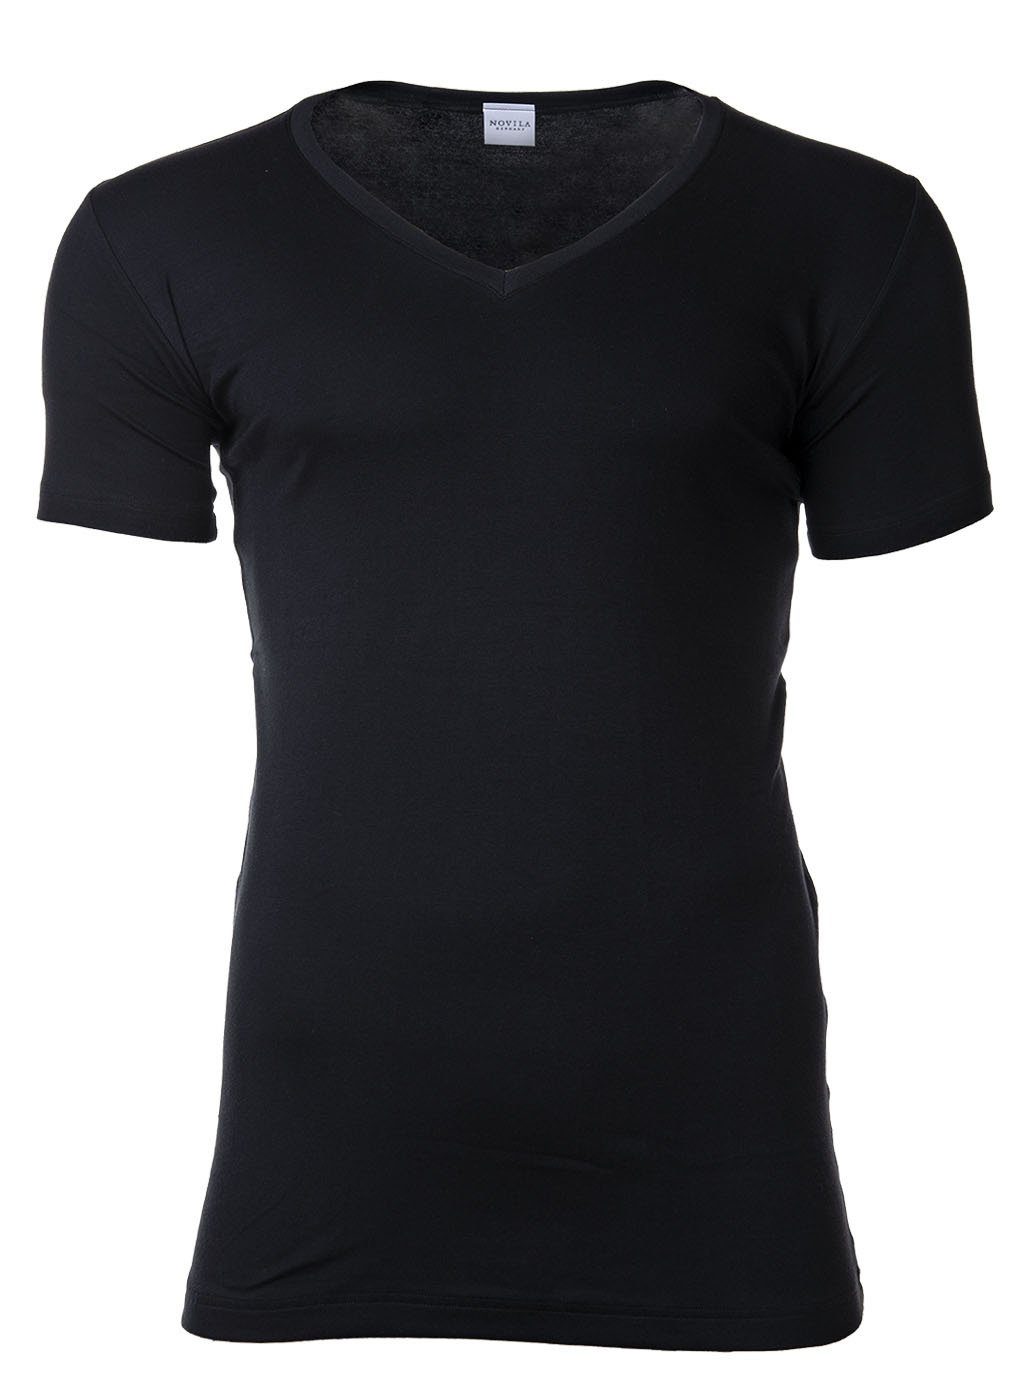 Novila T-Shirt Herren Comfort - Natural V-Ausschnitt, T-Shirt Schwarz